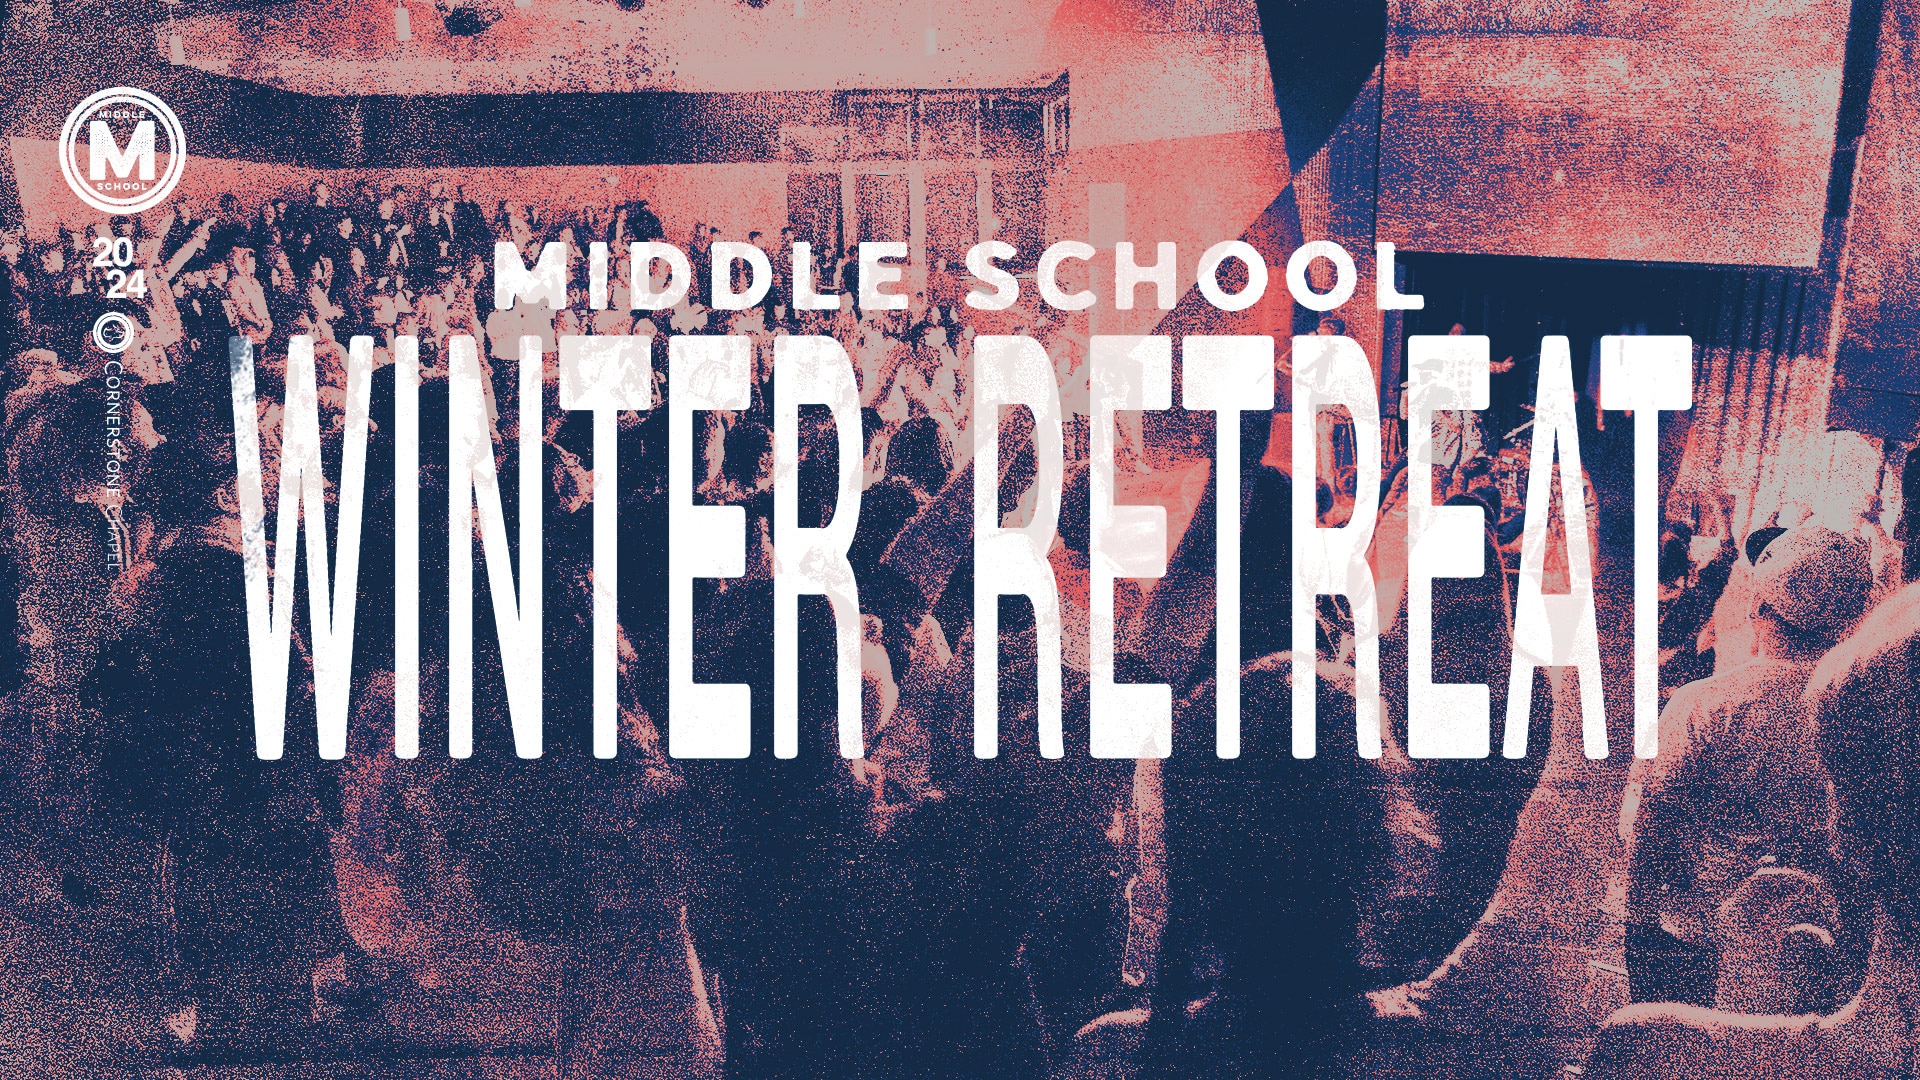 Middle School Winter Retreat